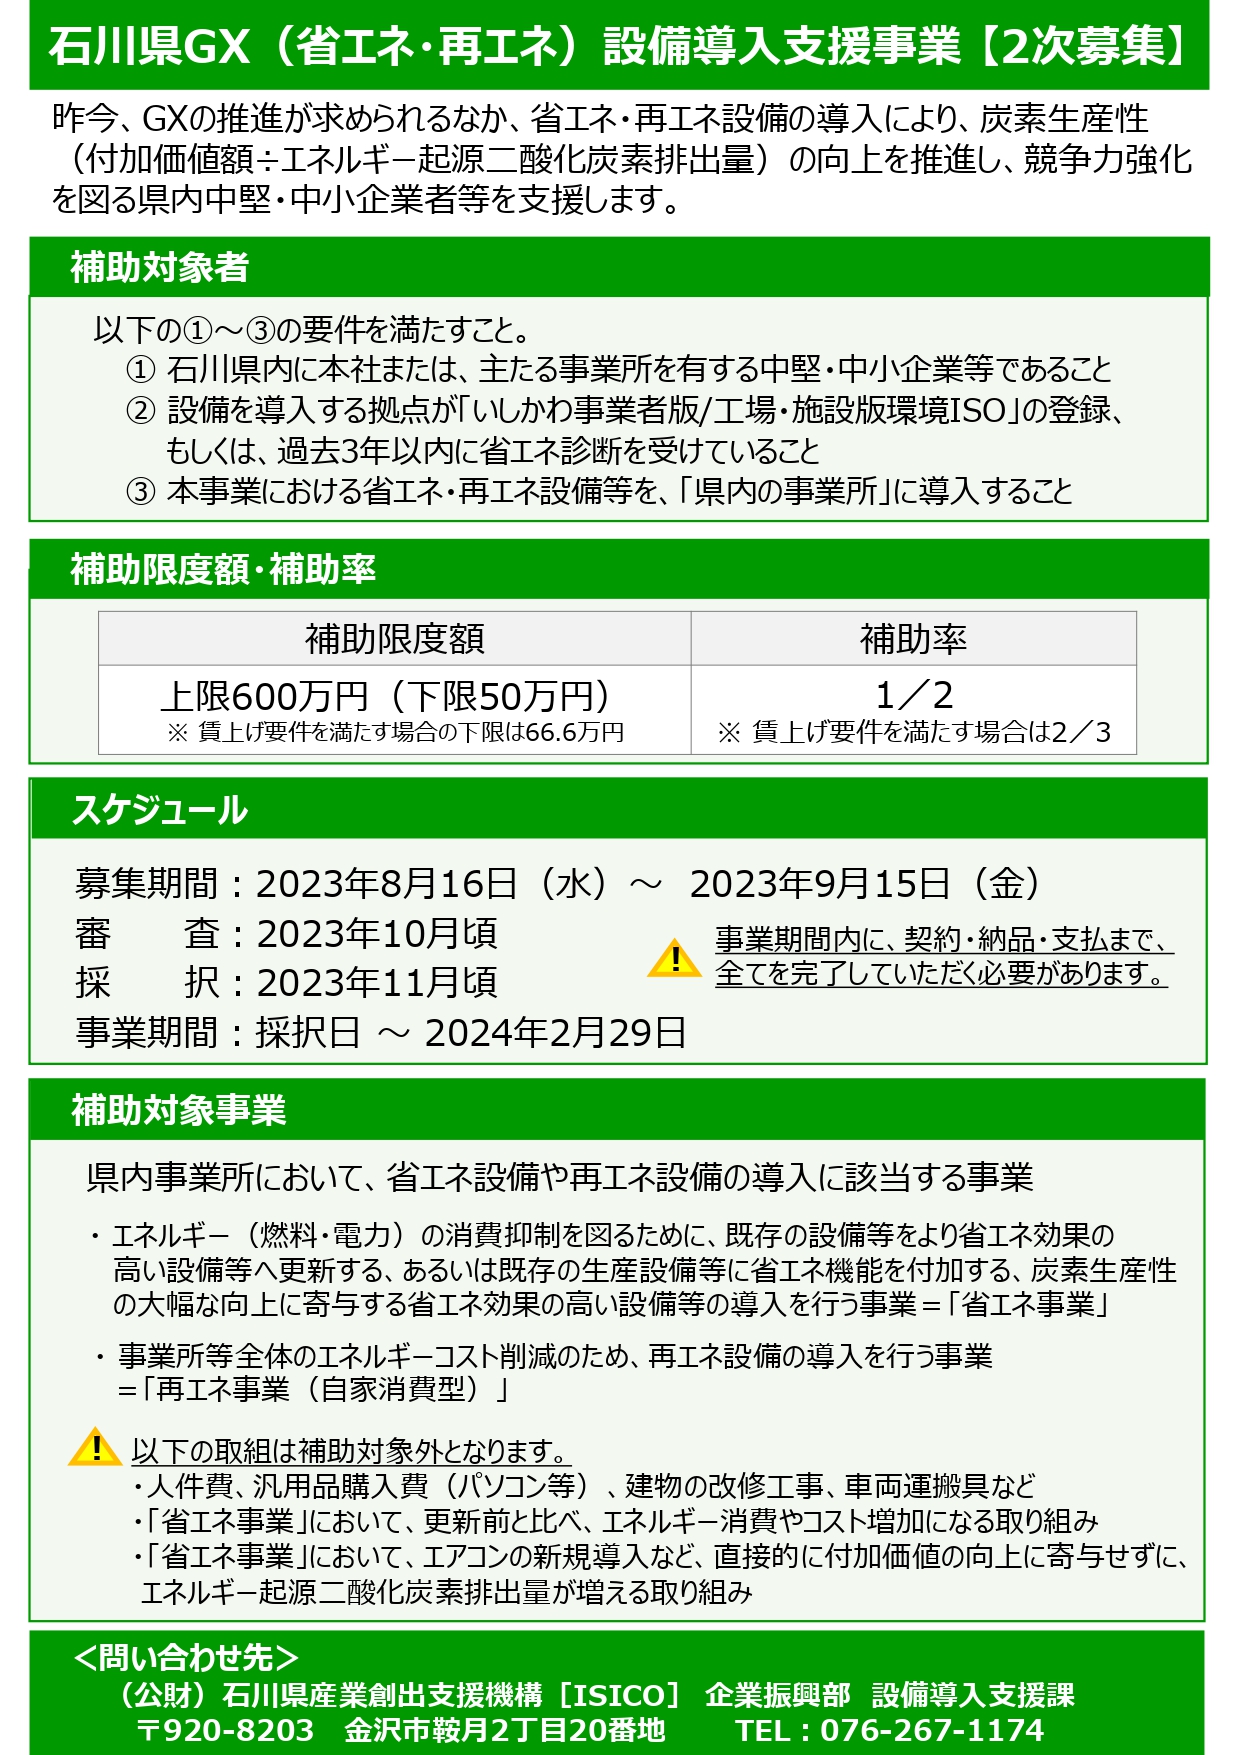 【ご案内】石川県GX(省エネ・再エネ)補助金の2次募集開始